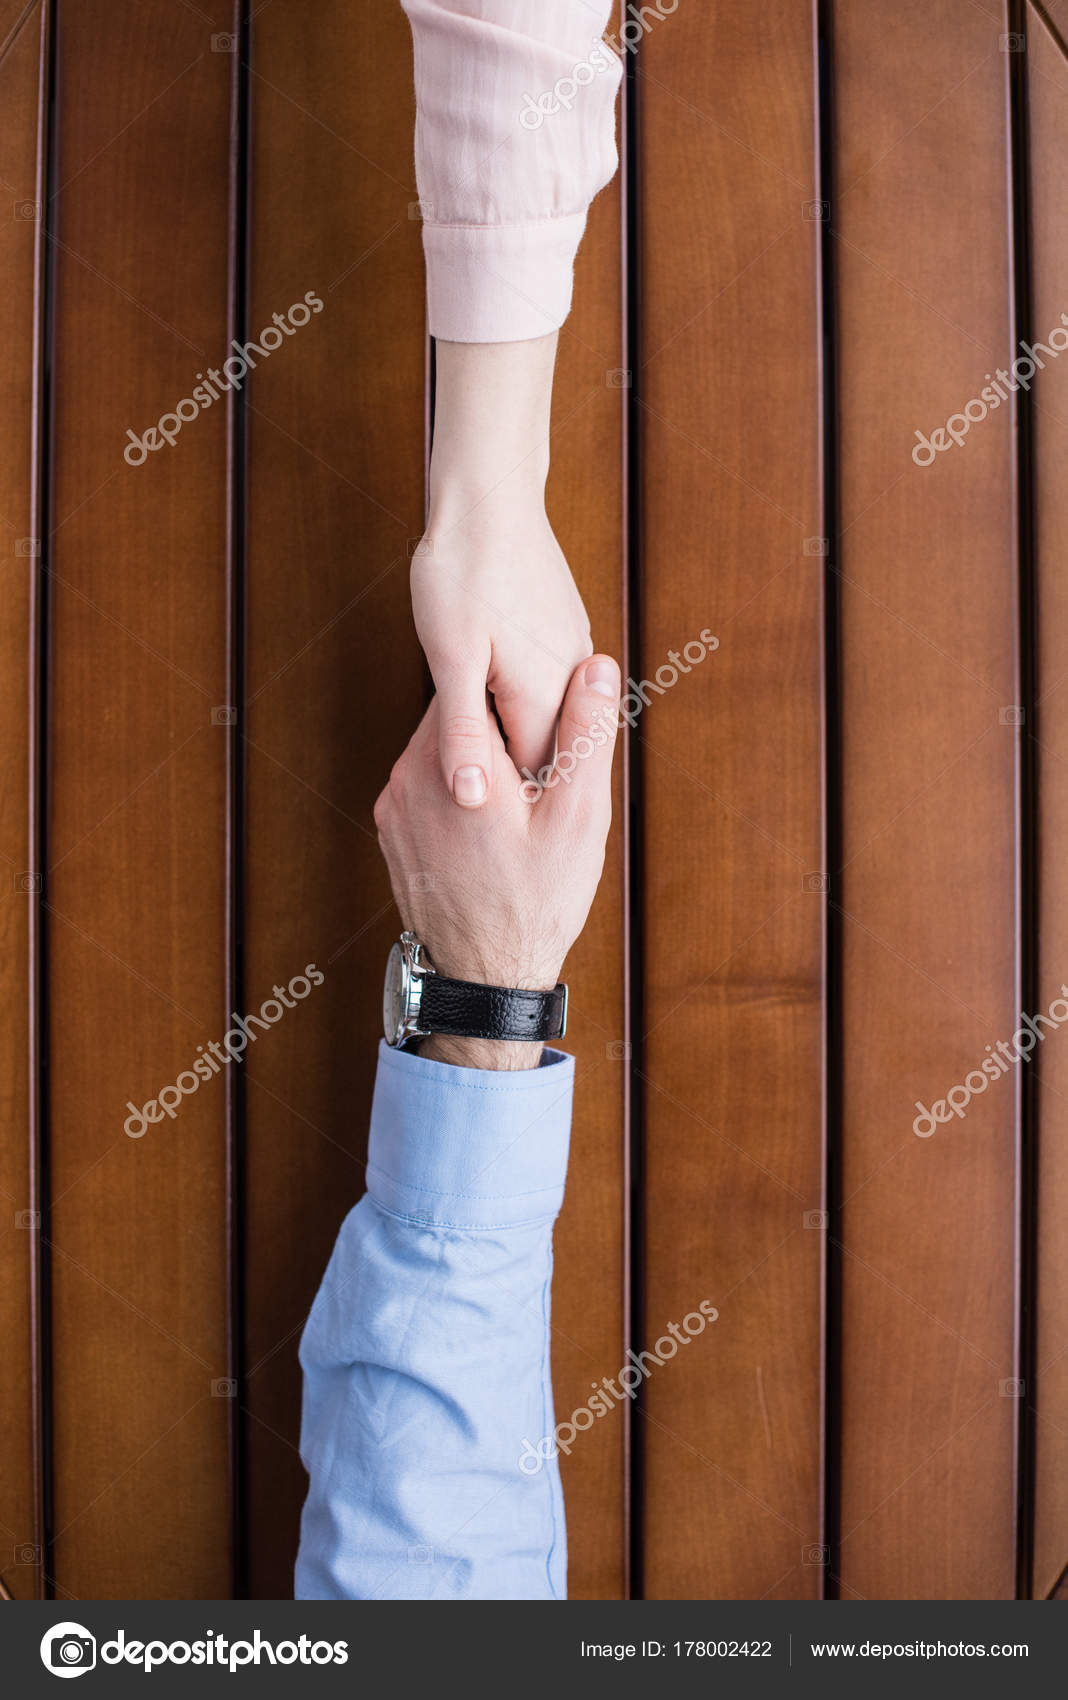 girlfriend and boyfriend holding hands